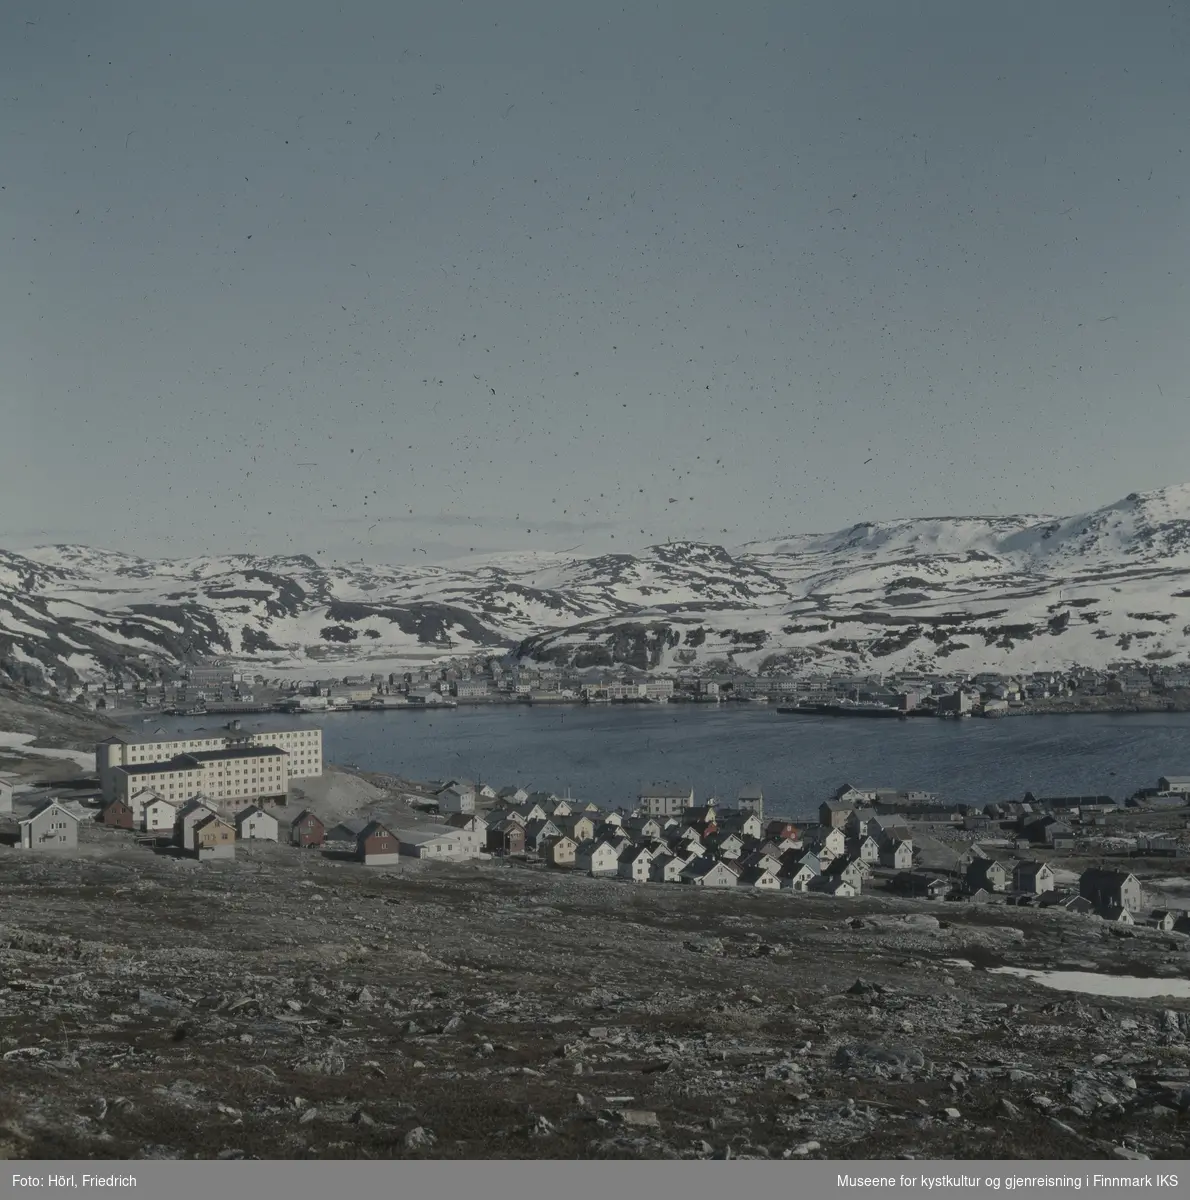 Utsikt over Hammerfest med sykehus og annet gjenreisningsbebyggelse i forgrunn. Bildet kan være tatt i våren 1958. Midt i bildet ser man havnebukta i Hammerfest, Mollaområde og byens sentrum bak den. På Storvannet og fjellene ligger det fortsatt snø.